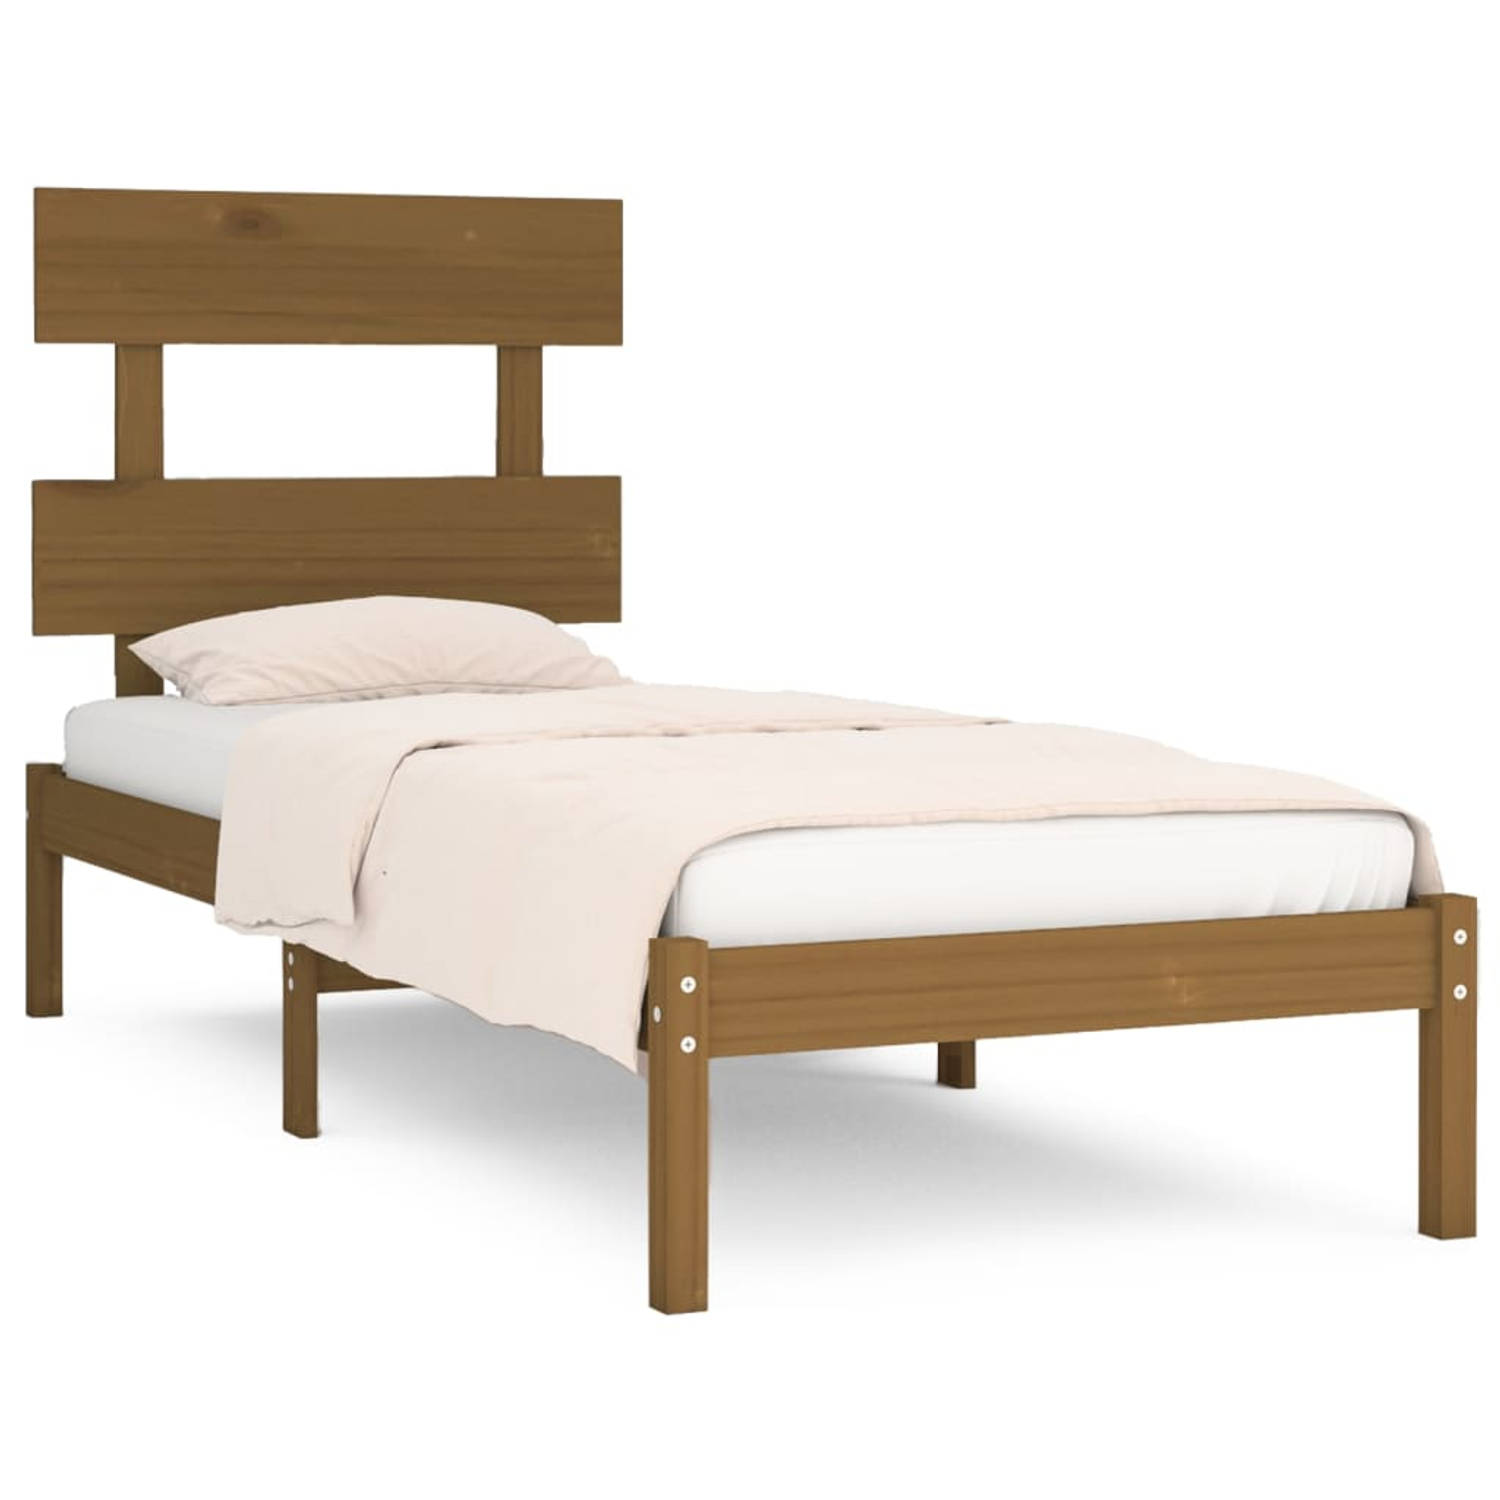 The Living Store Bedframe massief hout honingbruin 90x200 cm - Bedframe - Bedframes - Eenpersoonsbed - Bed - Bedombouw - Frame - Bed Frame - Ledikant - Bedframe Met Hoofdeinde - Ee